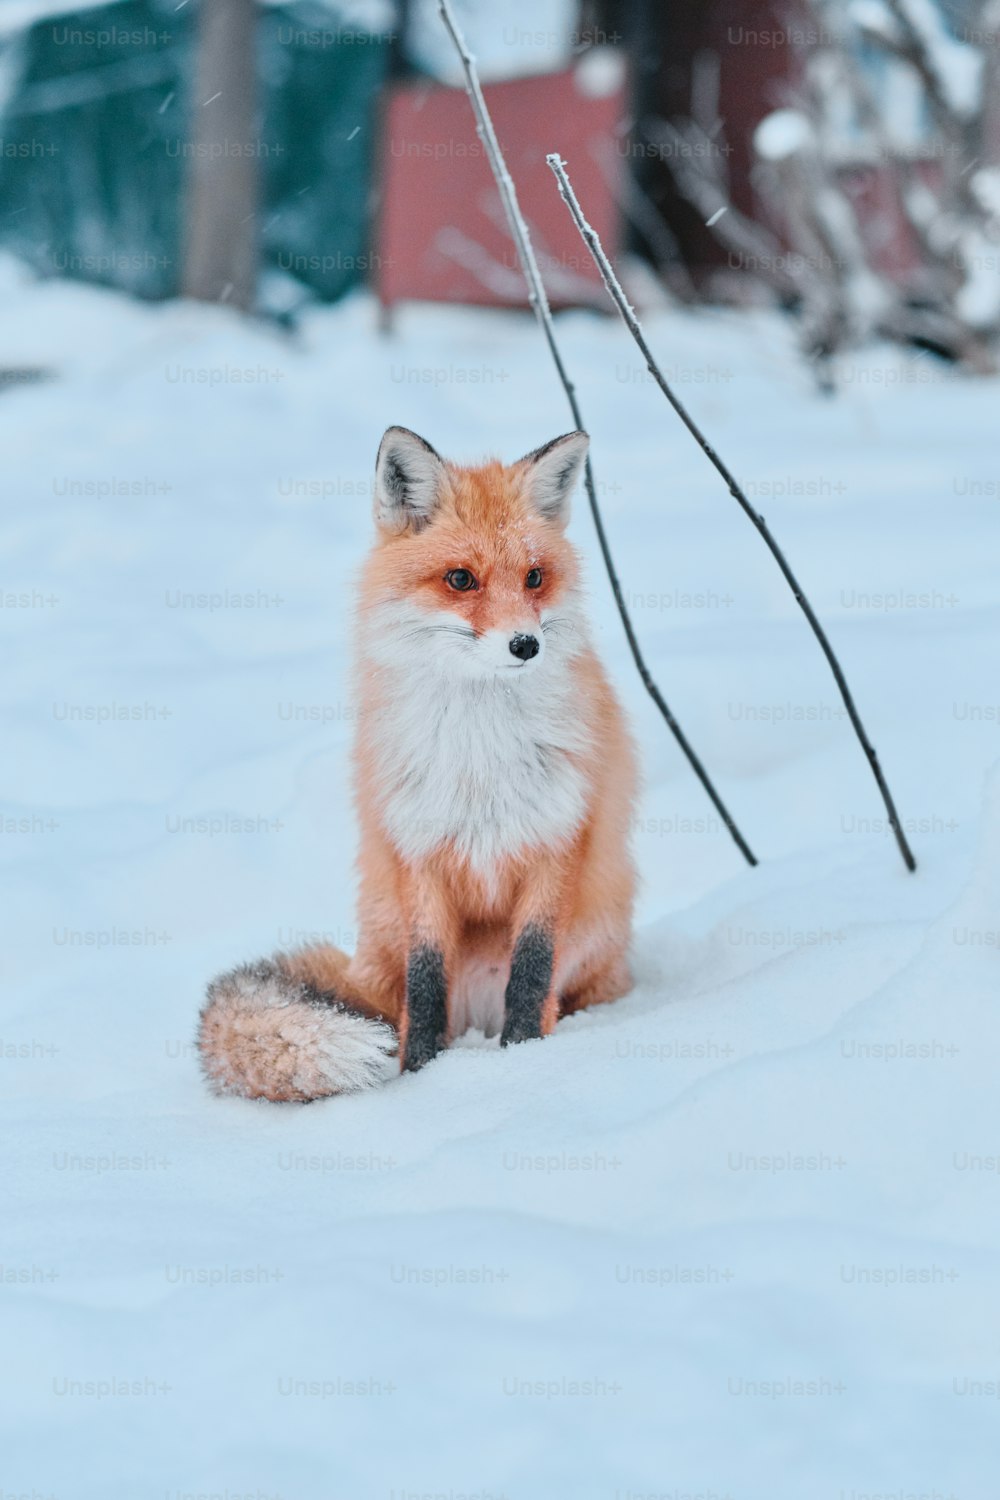 予約中の雪の中で足に尾を巻き付けて座っている全長の赤いキツネ、冬時間